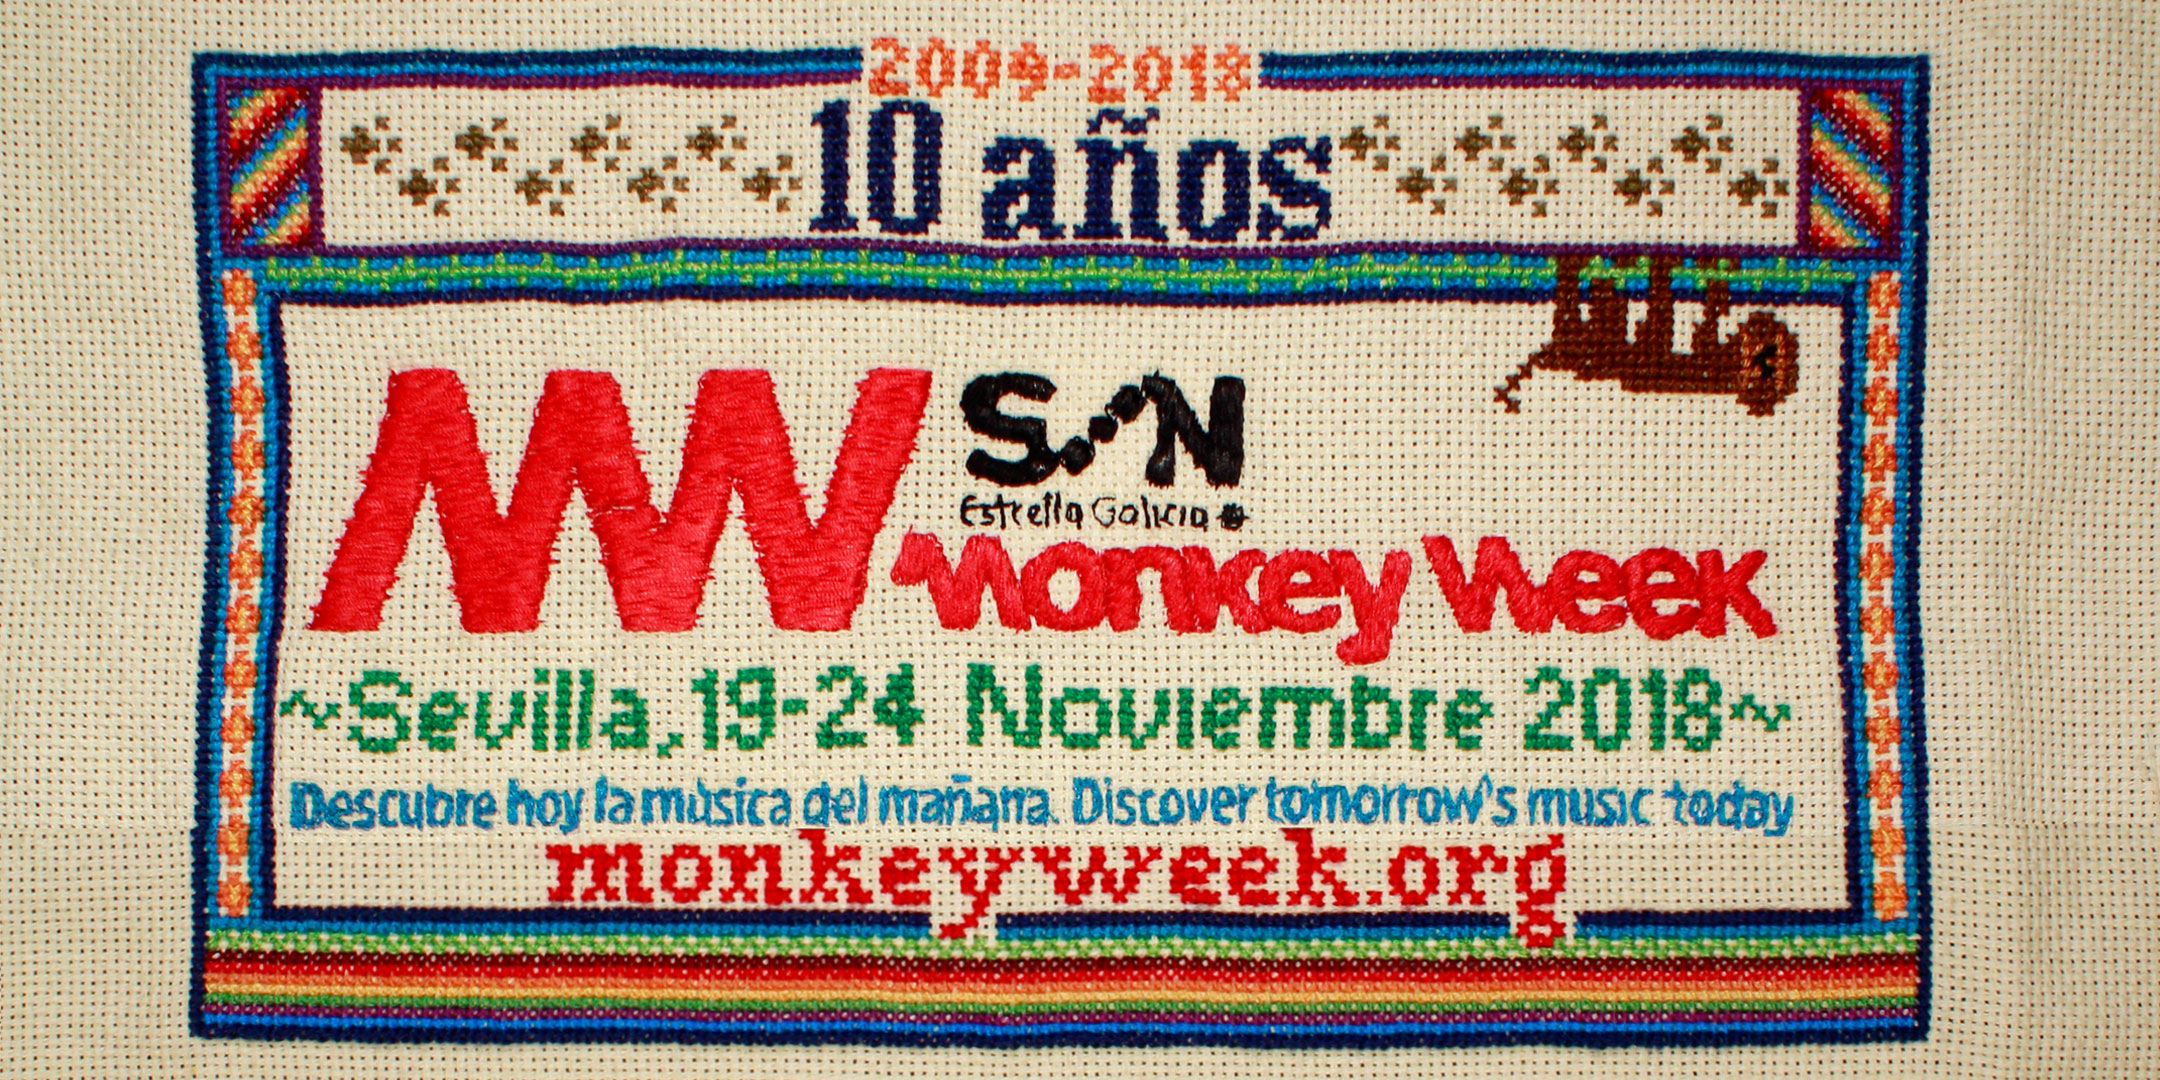 Primeras confirmaciones del Monkey Week Son Estrella Galicia